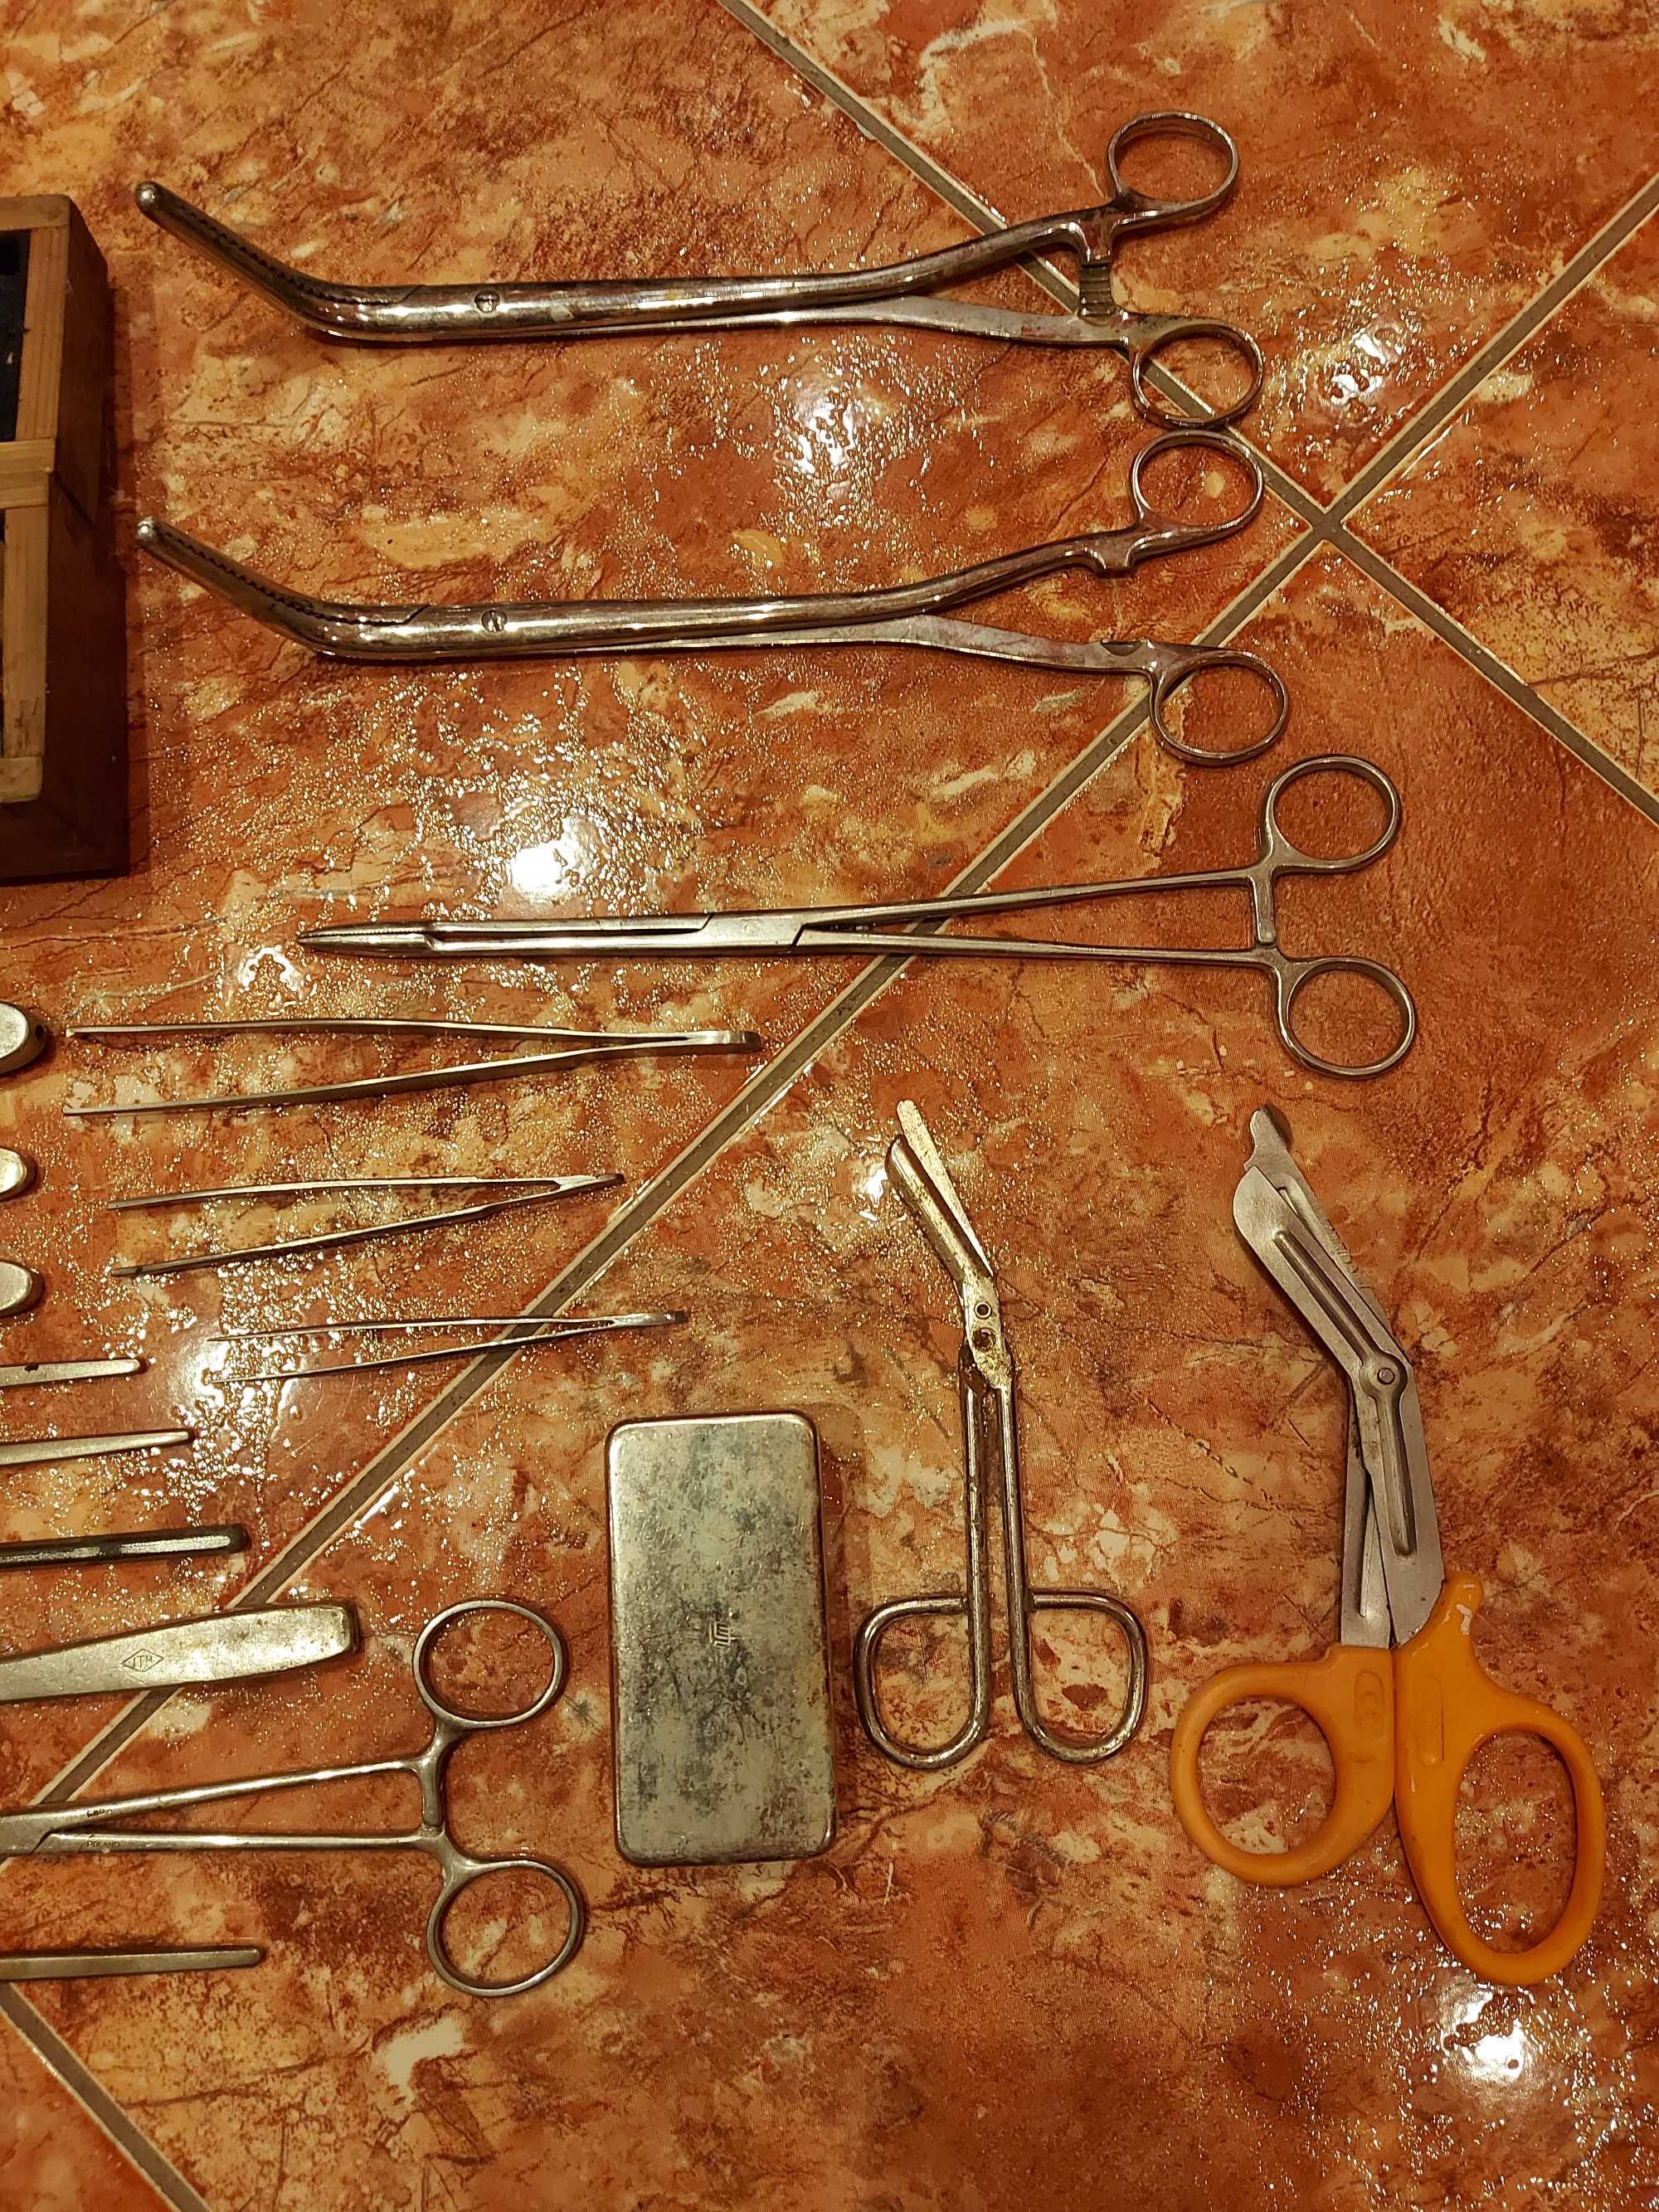 Instrumente Rare spital vechi din comunism armata militare vintage